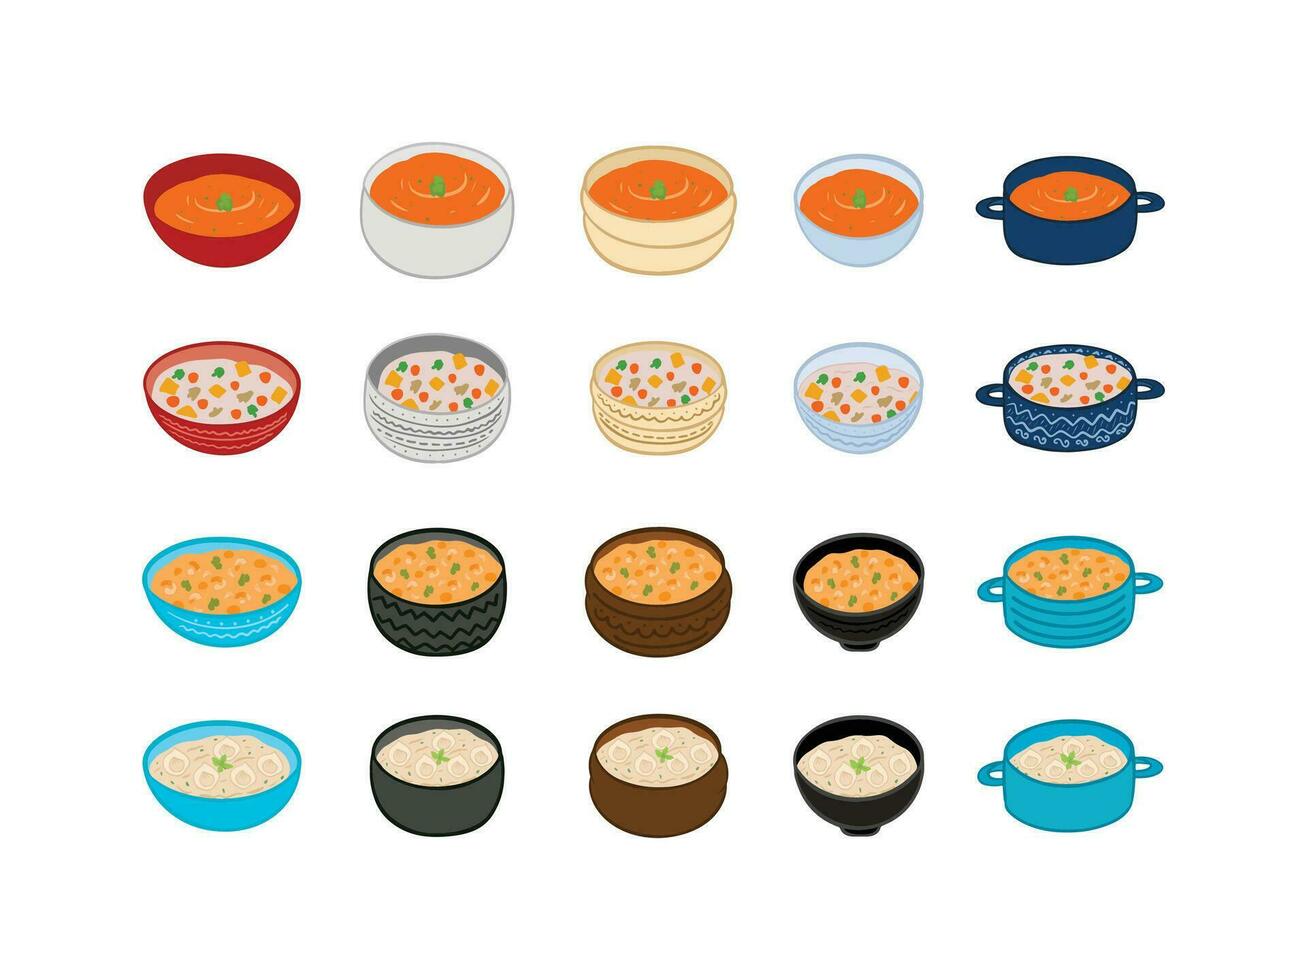 reeks van pictogrammen voor voedsel, divers soep illustratie vector